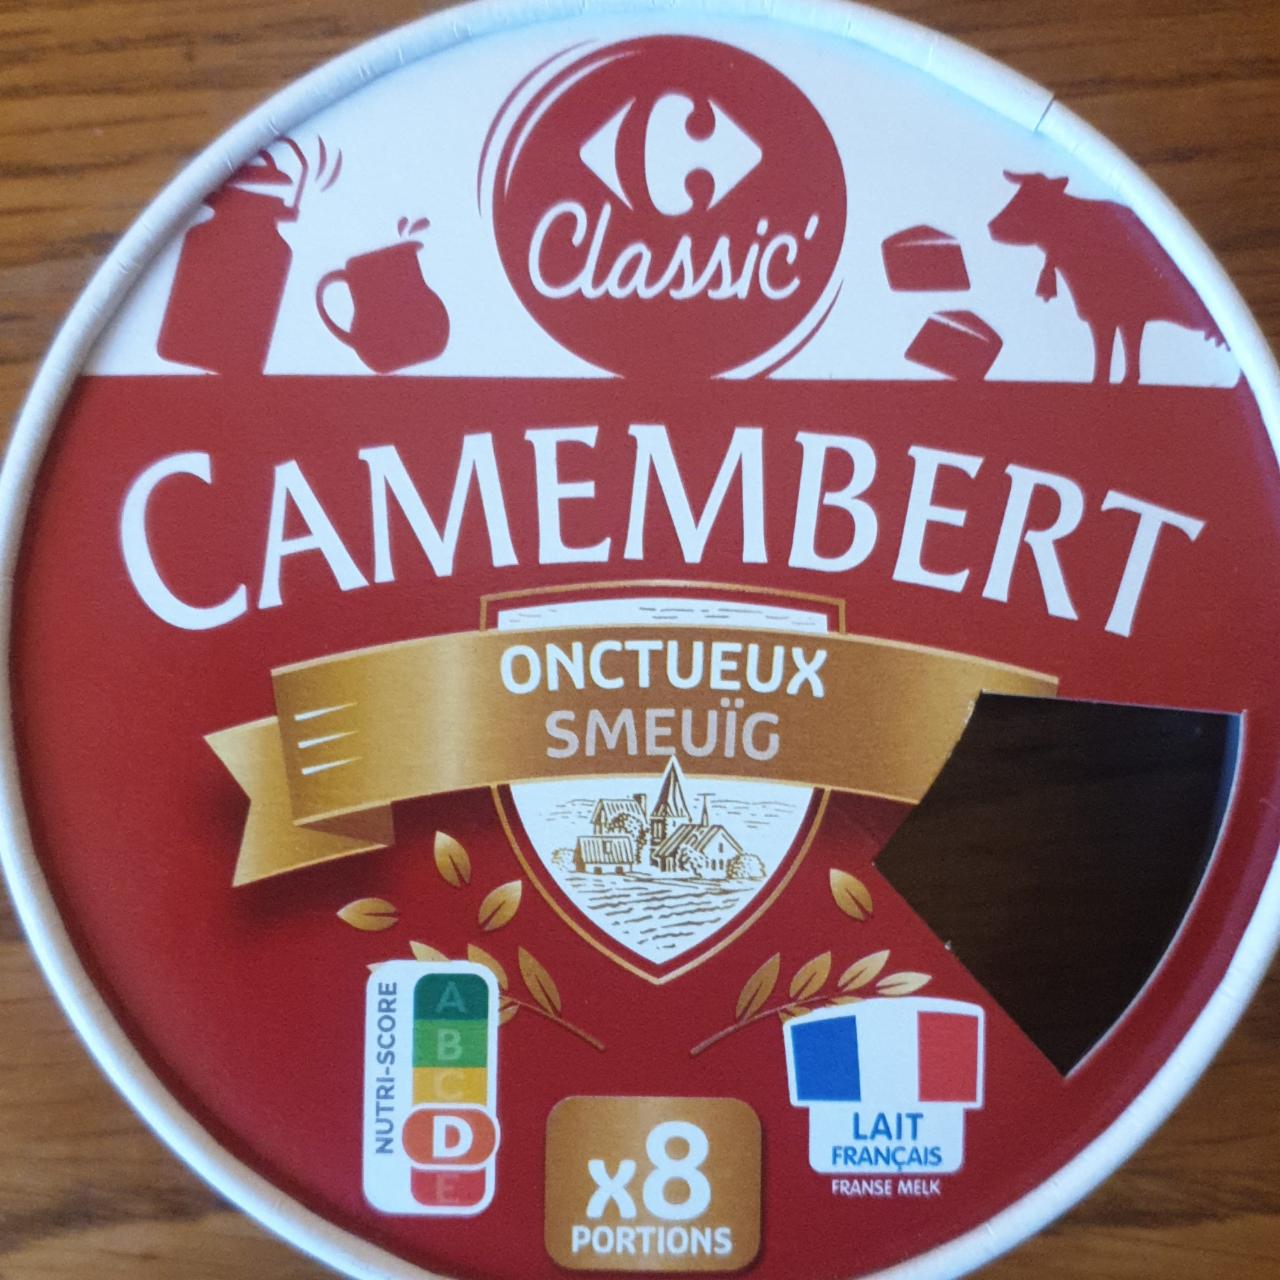 Fotografie - Camembert Onctueux smeuïg Carrefour Classic